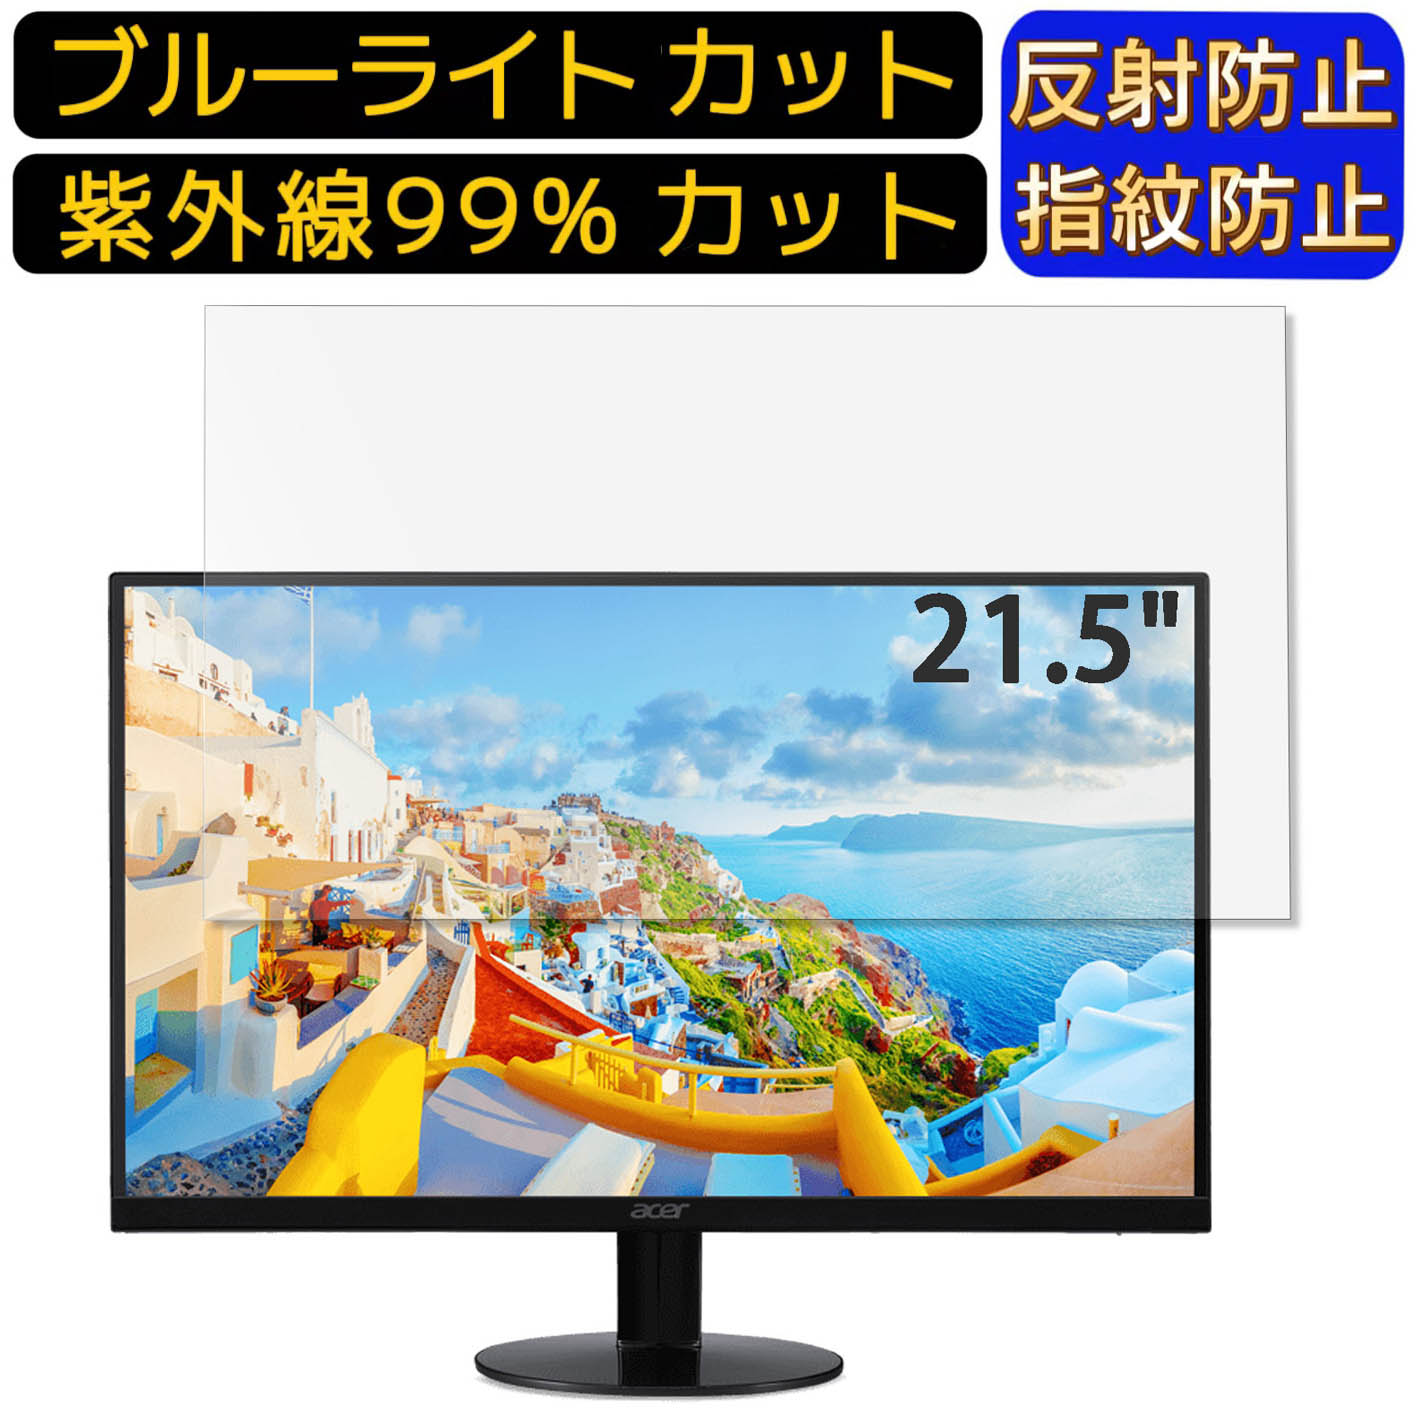 【ポイント2倍】Acer SB220Qbi 21.5イン